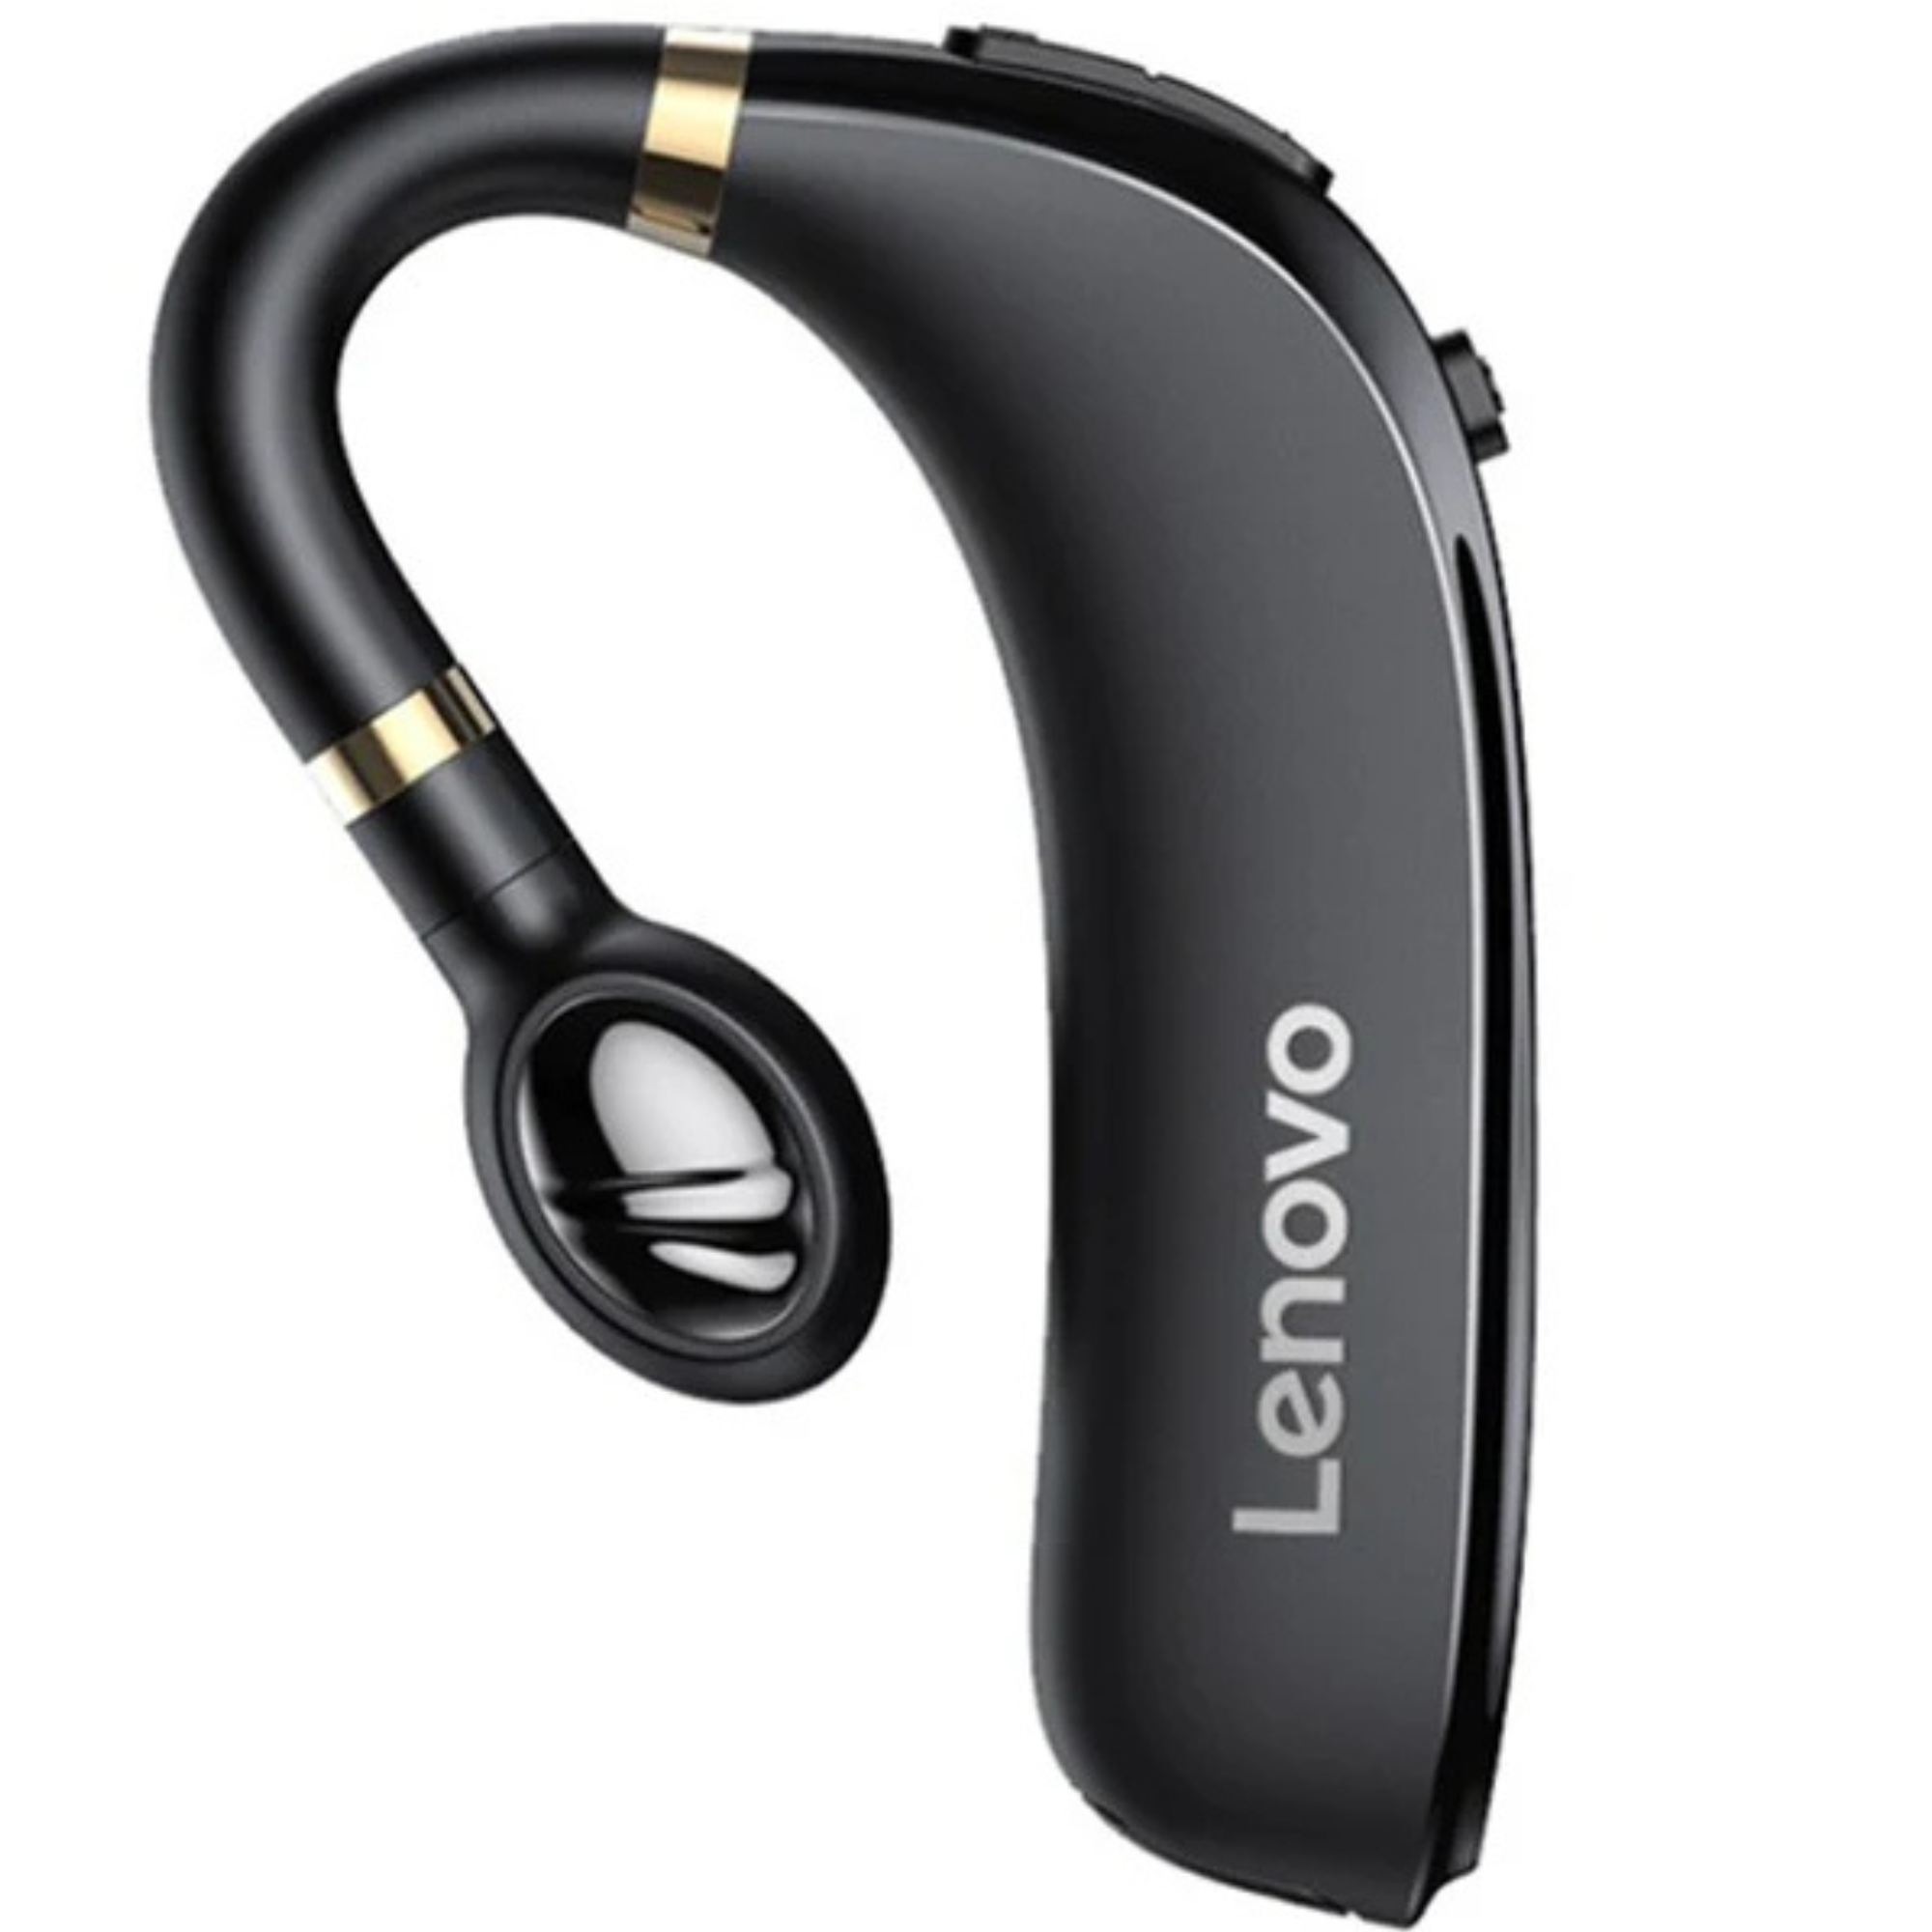 Hochwertige Bluetooth Kopfhörer: Drahtlose Ohrhörer mit Ohrhaken, Bluetooth 5.0, Mikrofon – 40 Std. Laufzeit, ideal für Fitness